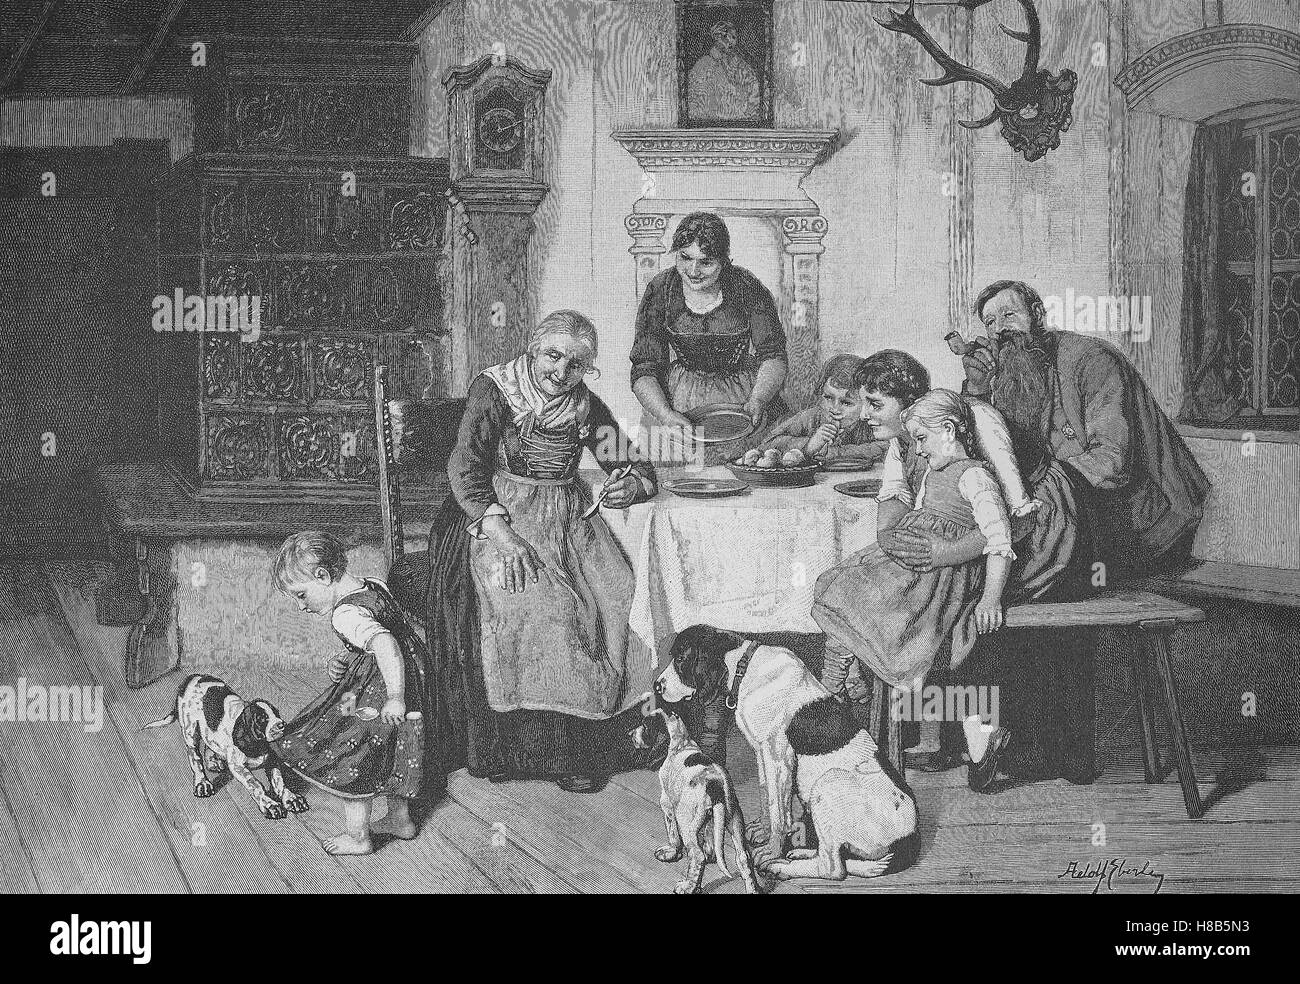 Domenica idillio di famiglia in una famiglia di contadini, con la nonna, bambini e cani, Xilografia dal 1892 Foto Stock